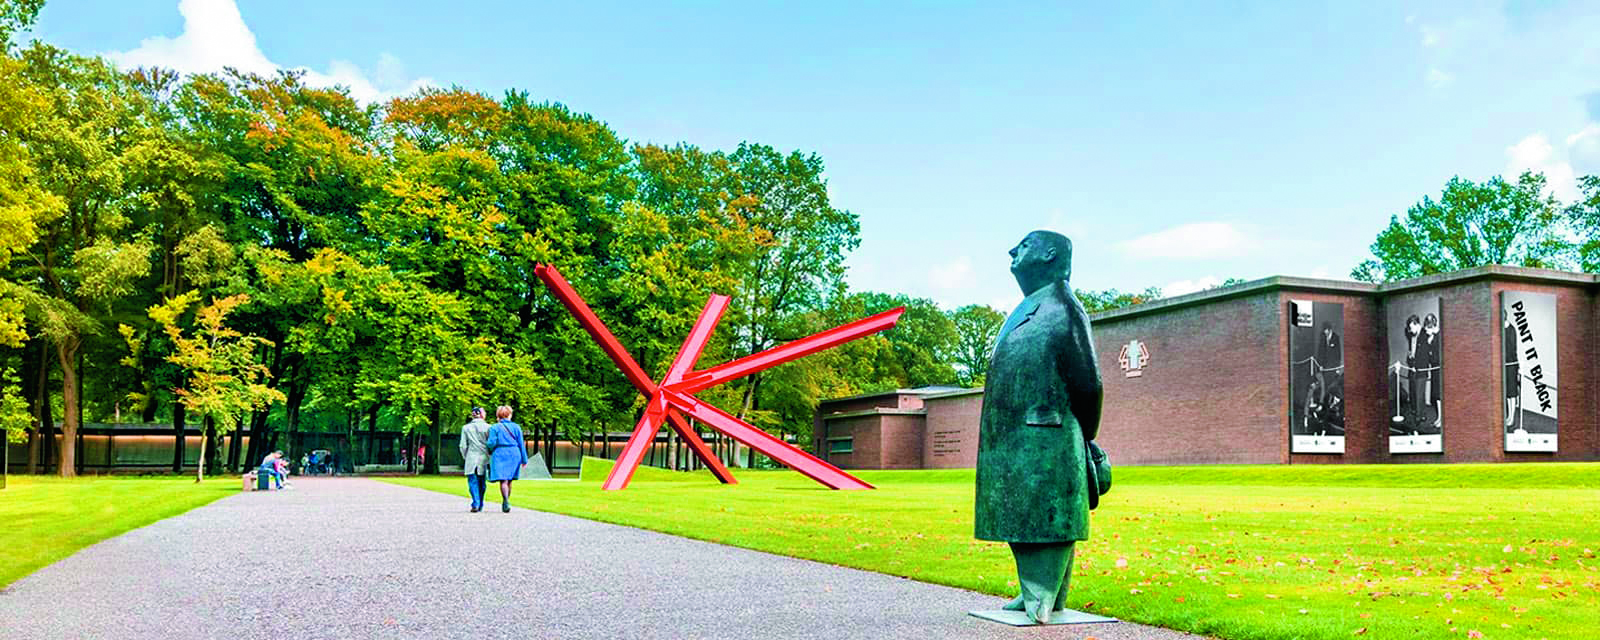 Kröller-Müller Museum verwerft drie futuristische werken